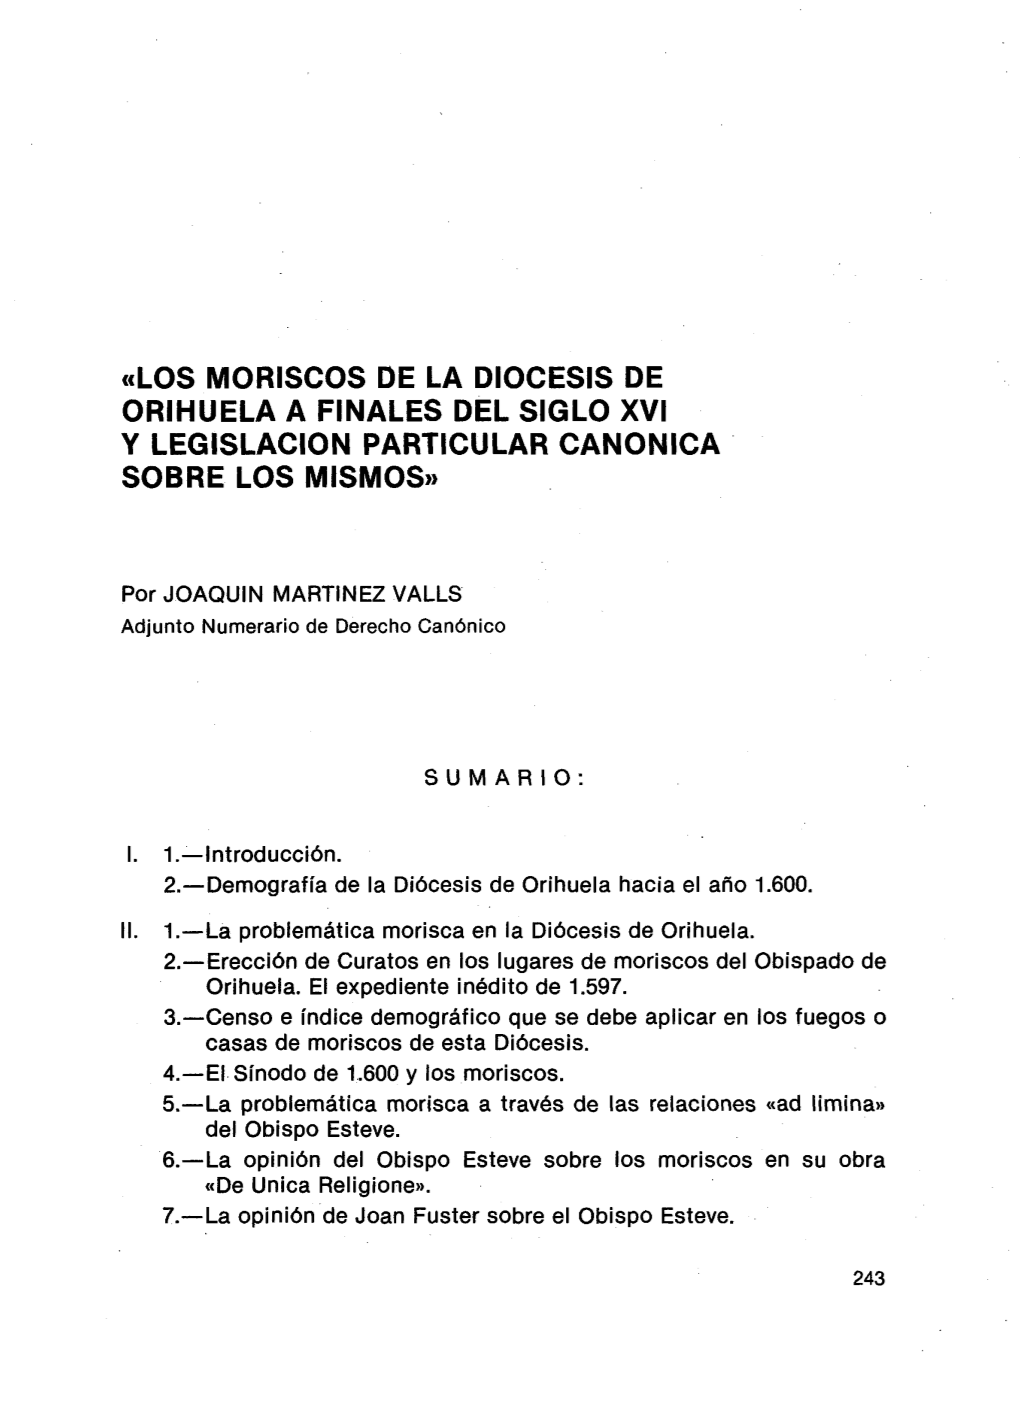 Celos MORISCOS DE LA DIOCESIS DE ORIHUELA a FINALES DEL SIGLO XVI Y LEGISLACION PARTICULAR CANONICA